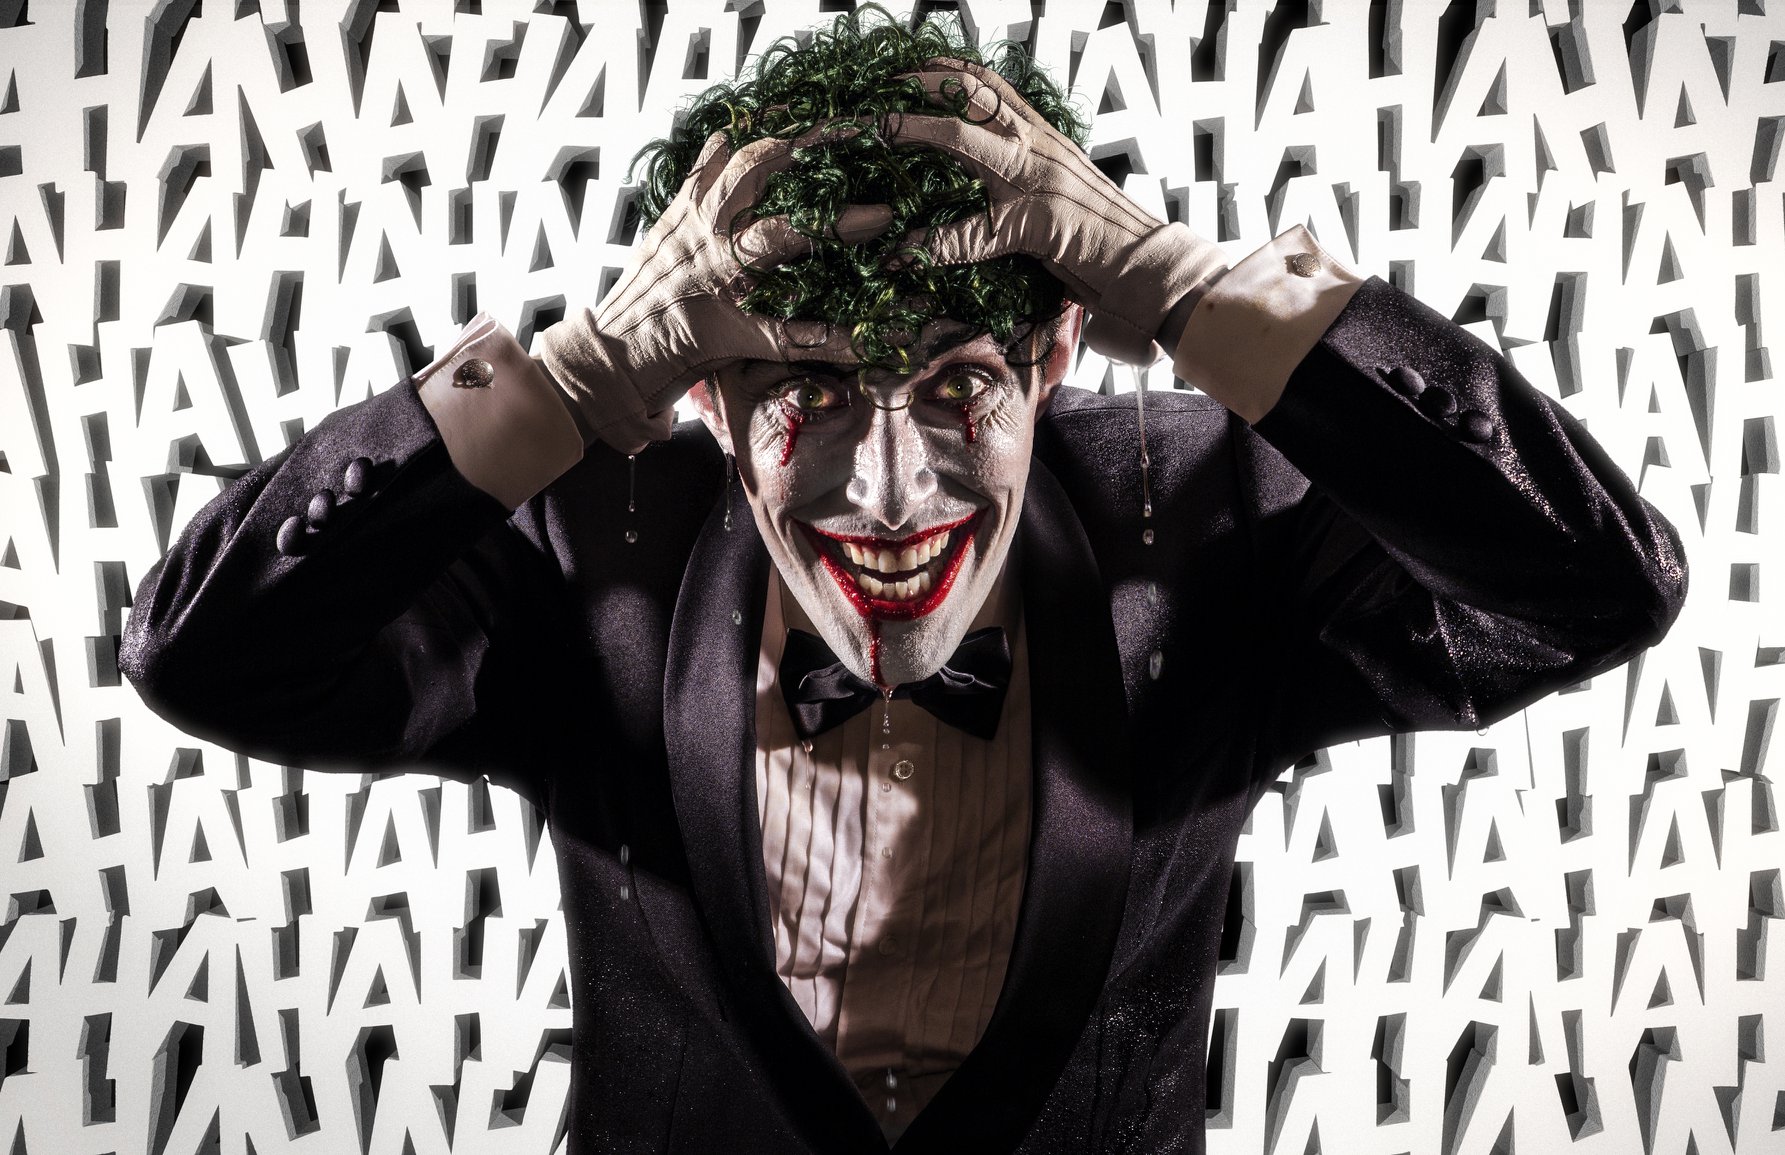 Batman: The Joker cosplay by Anthony Misiano